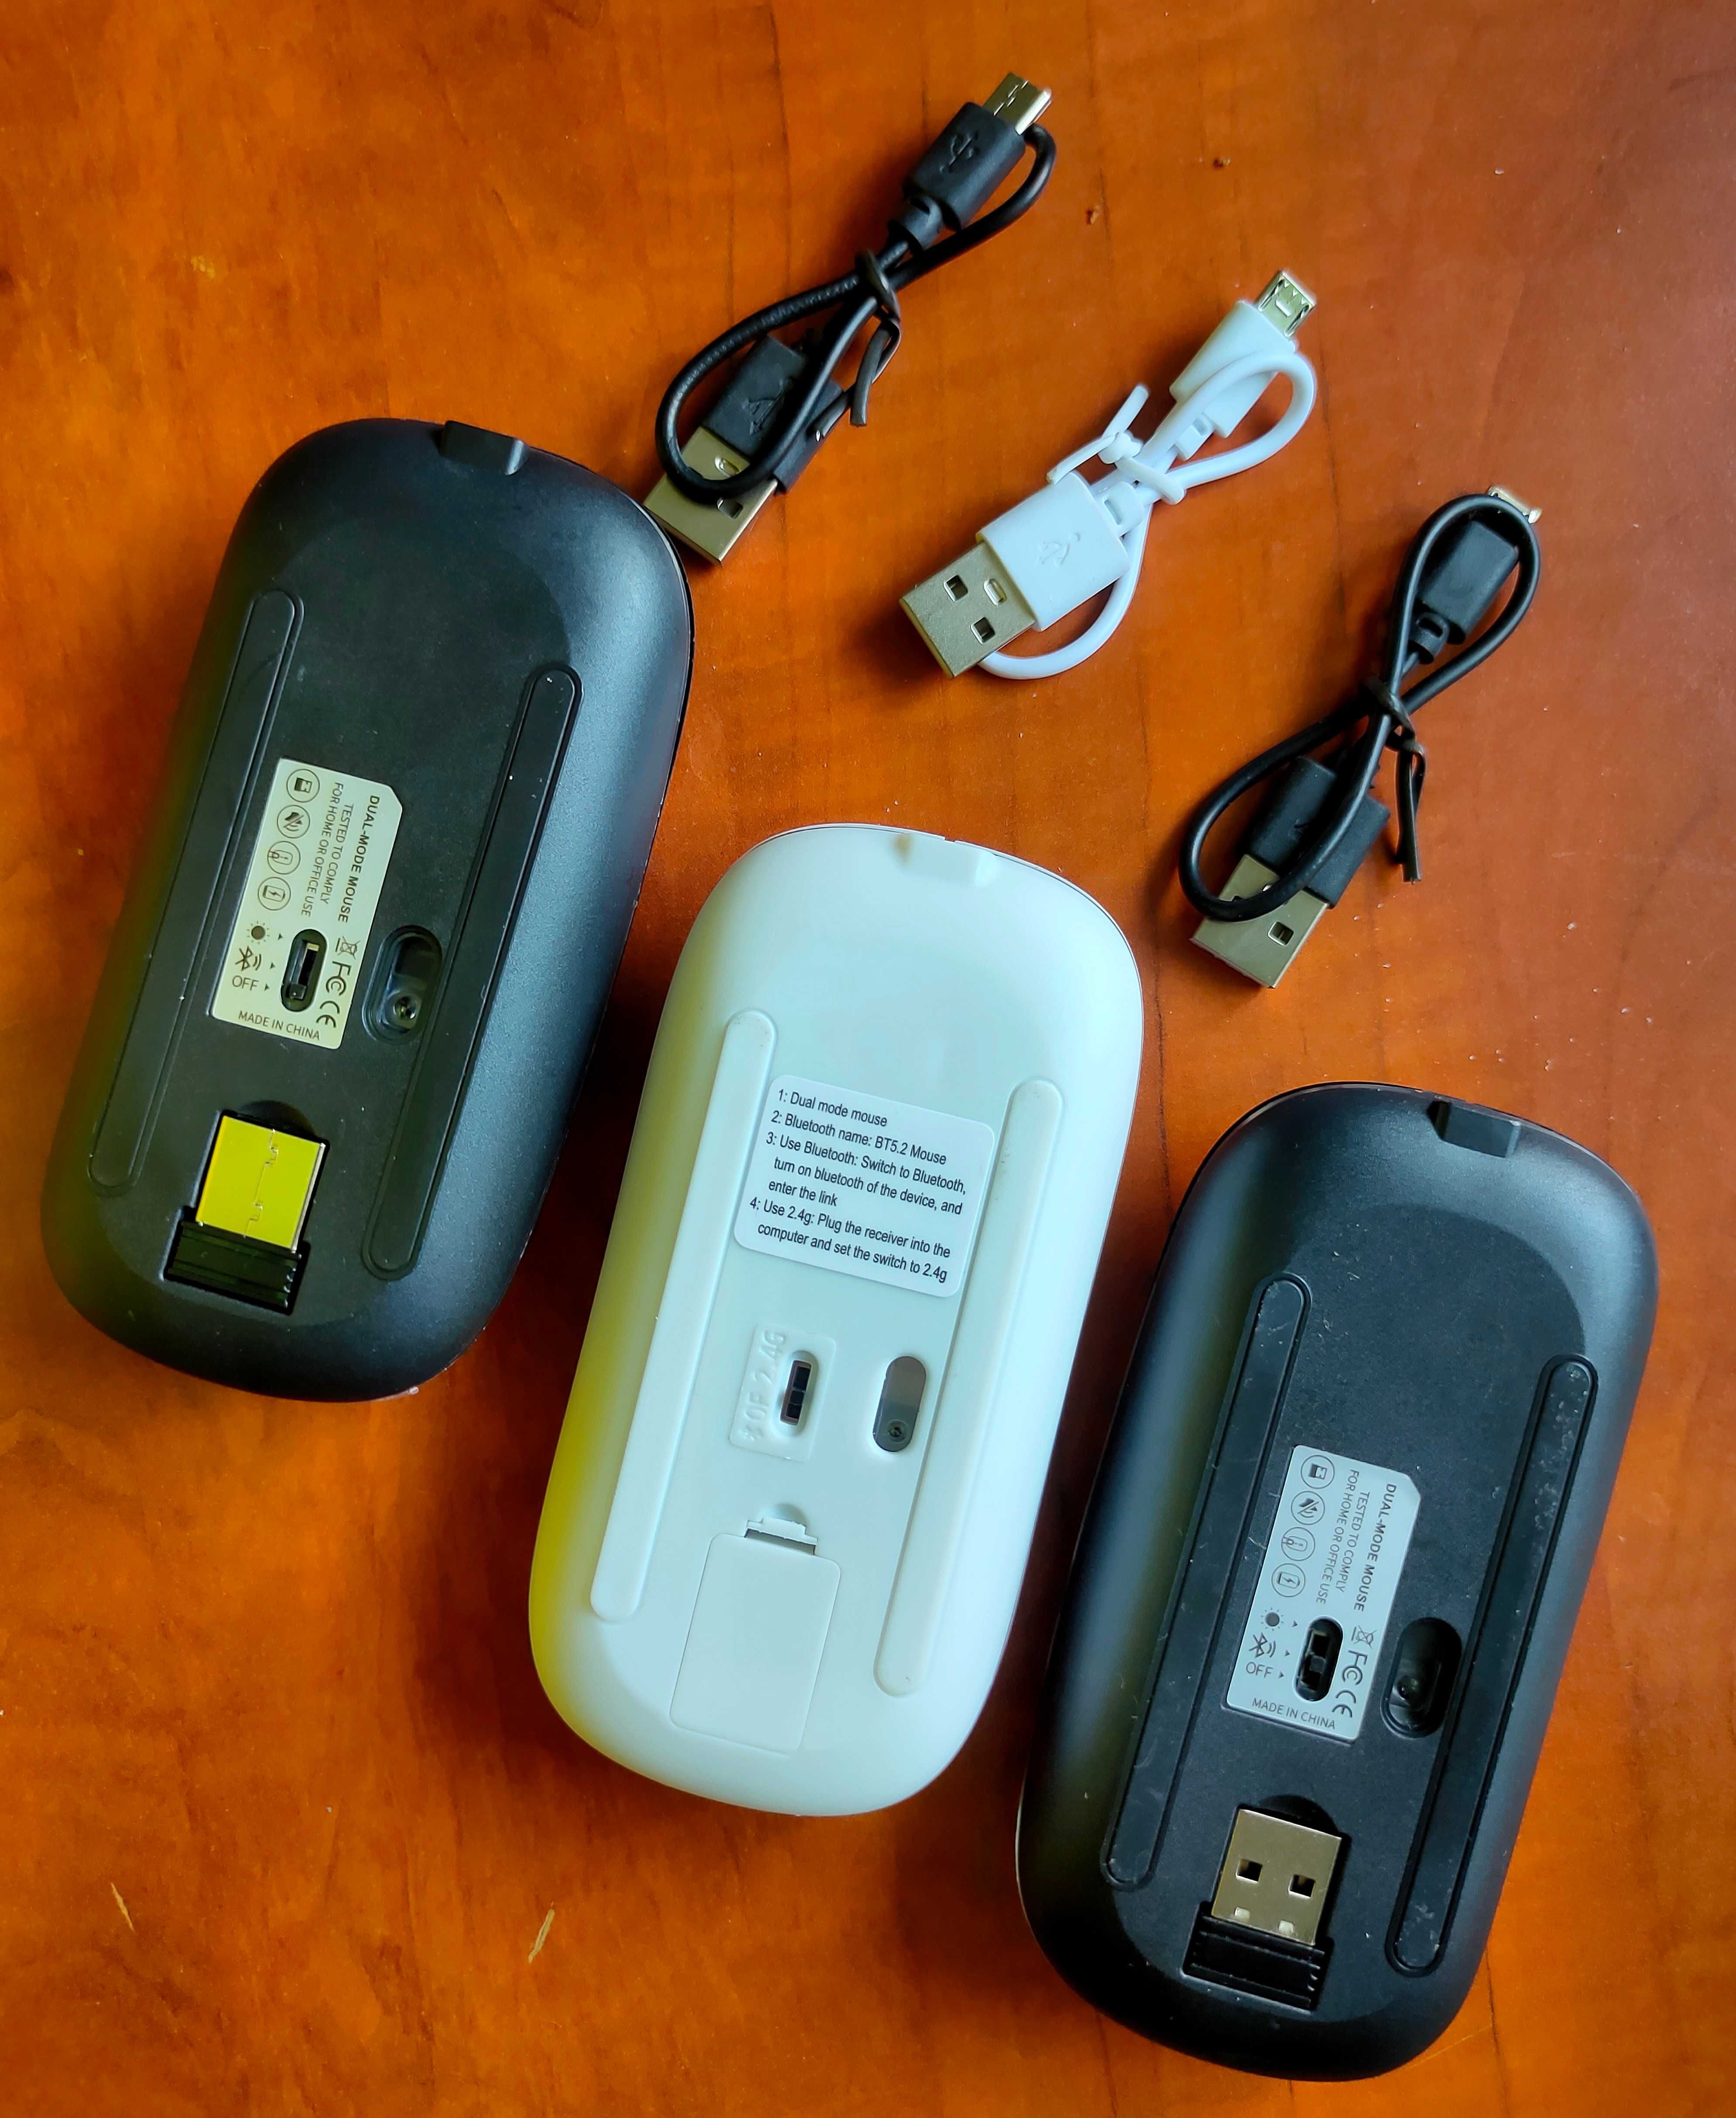 Bezprzewodowa mysz / mysz / USB mysz / mysz do laptopa